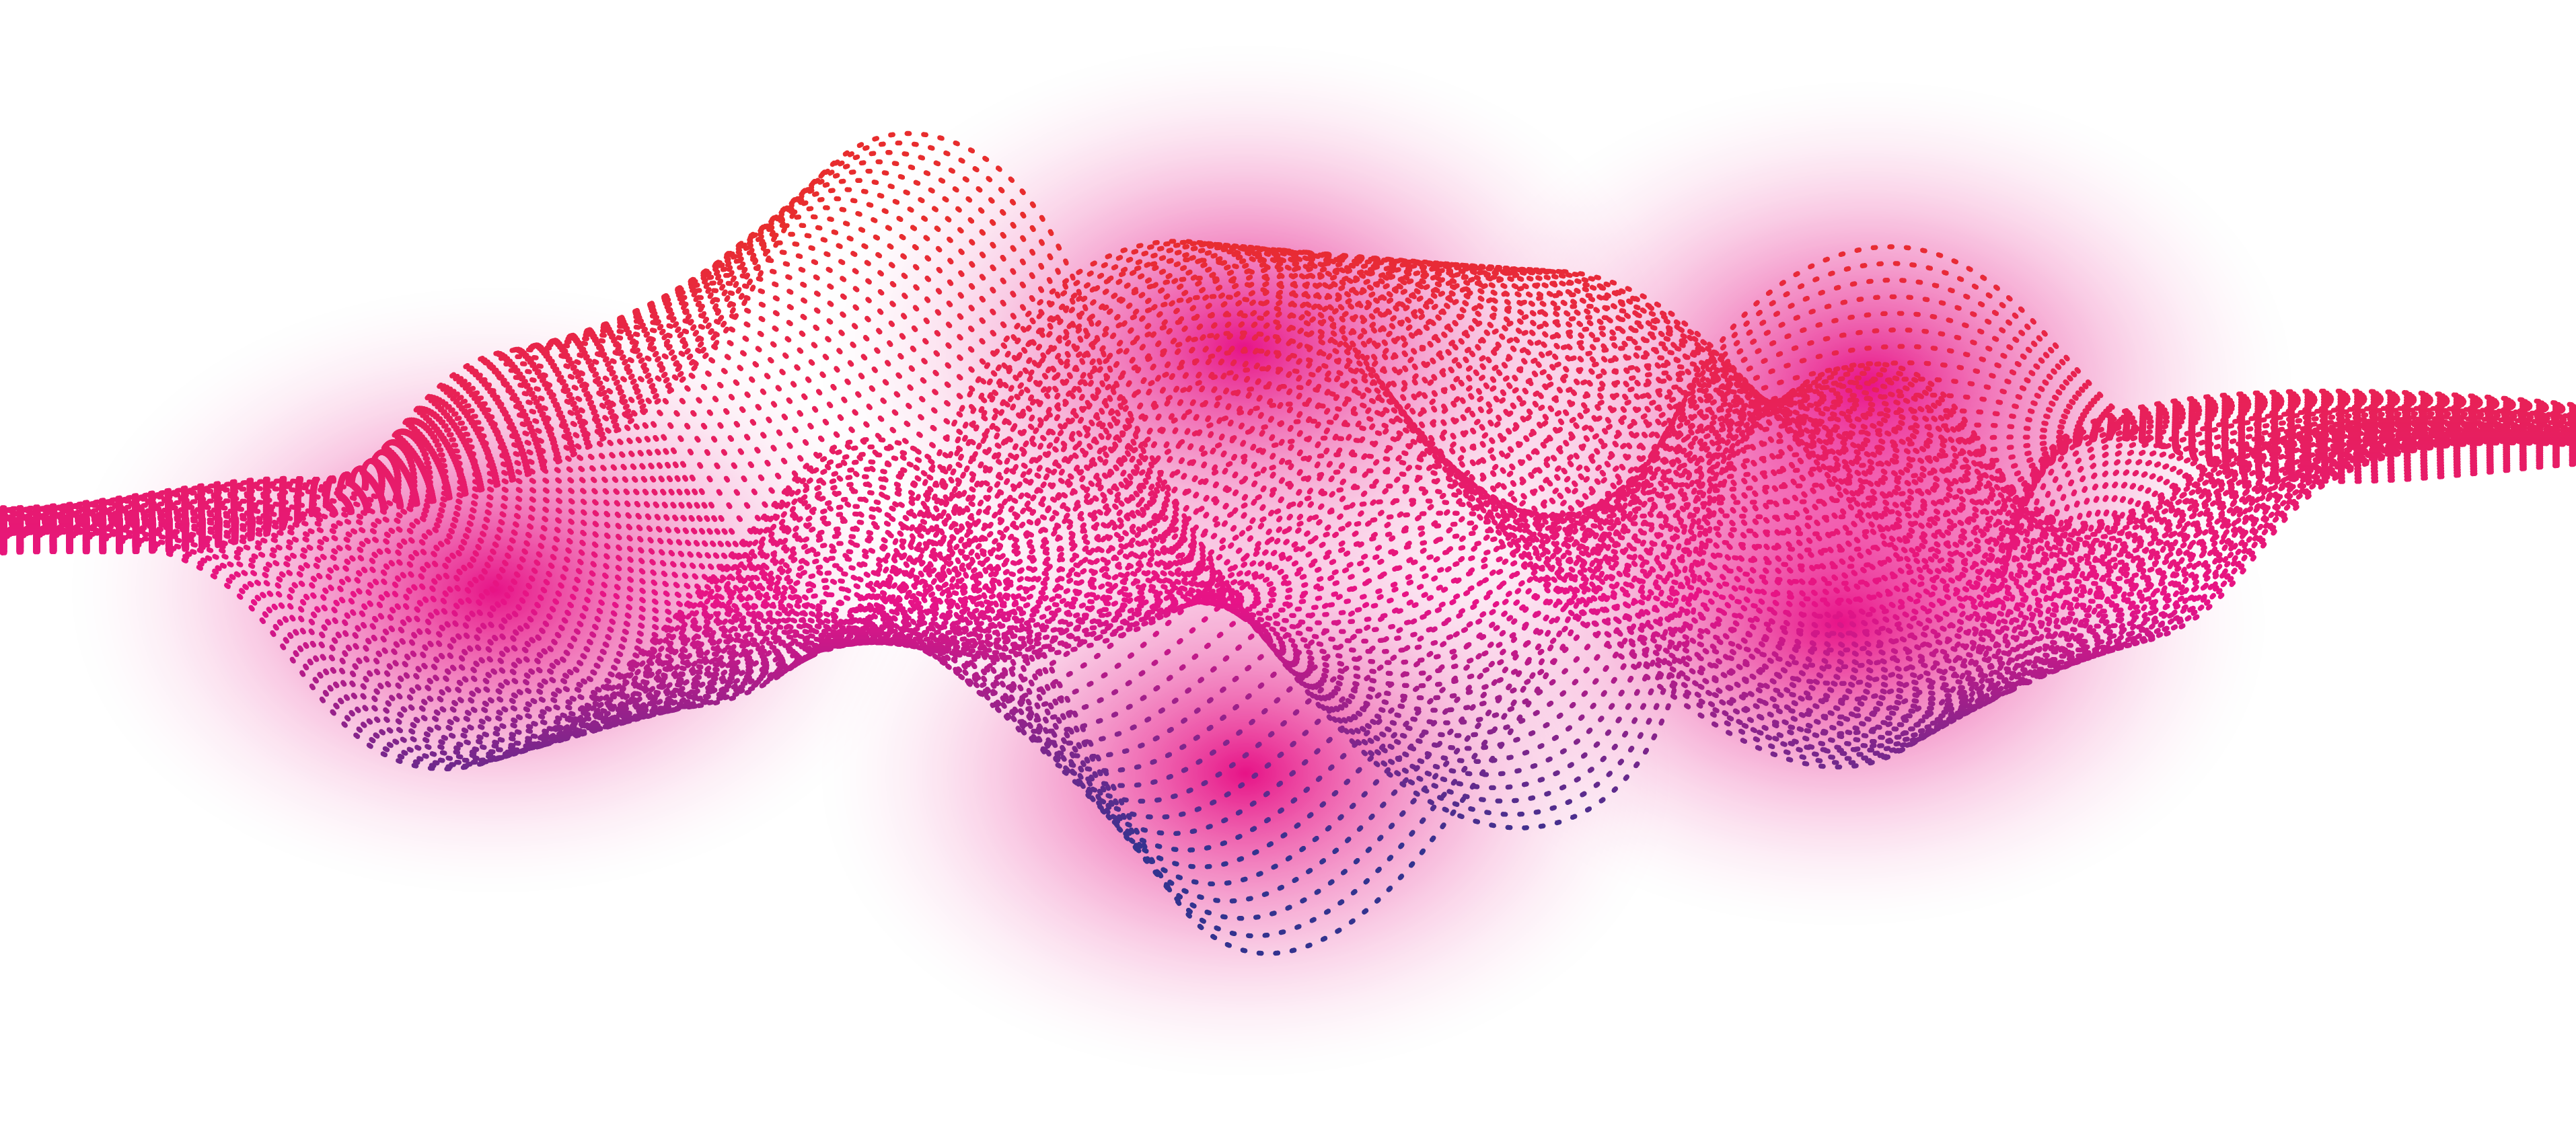 Sound Pink Curve Petal Wave Download HQ PNG PNG Image